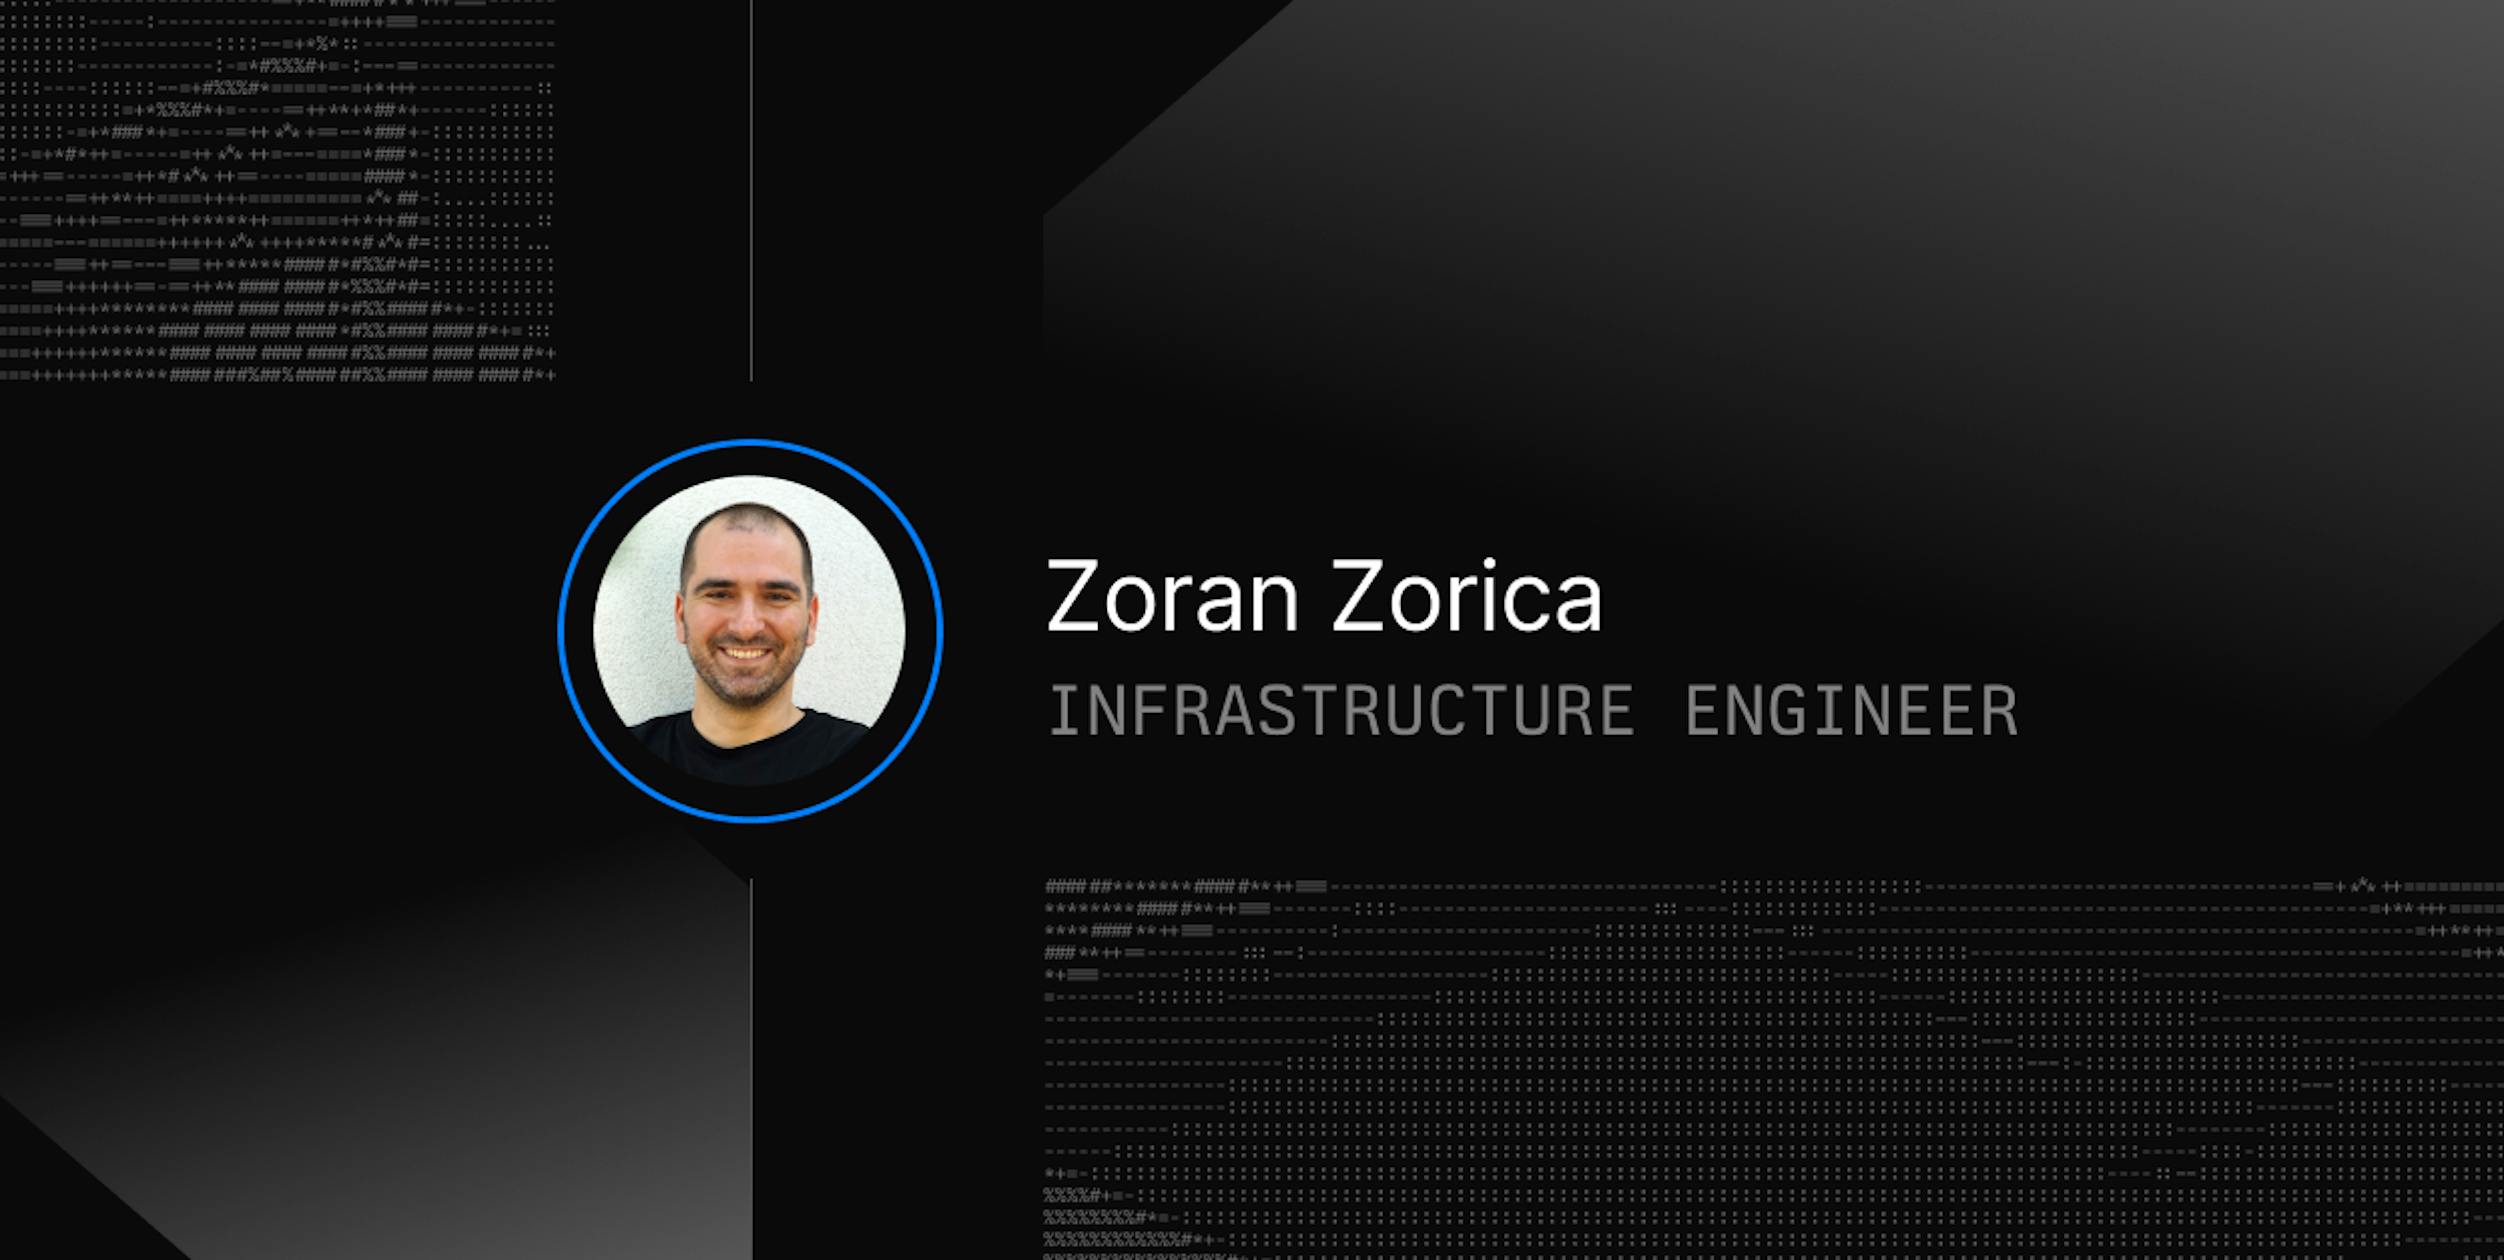 Zoran Zorica Senior Infrastructure Engineer at Daytona